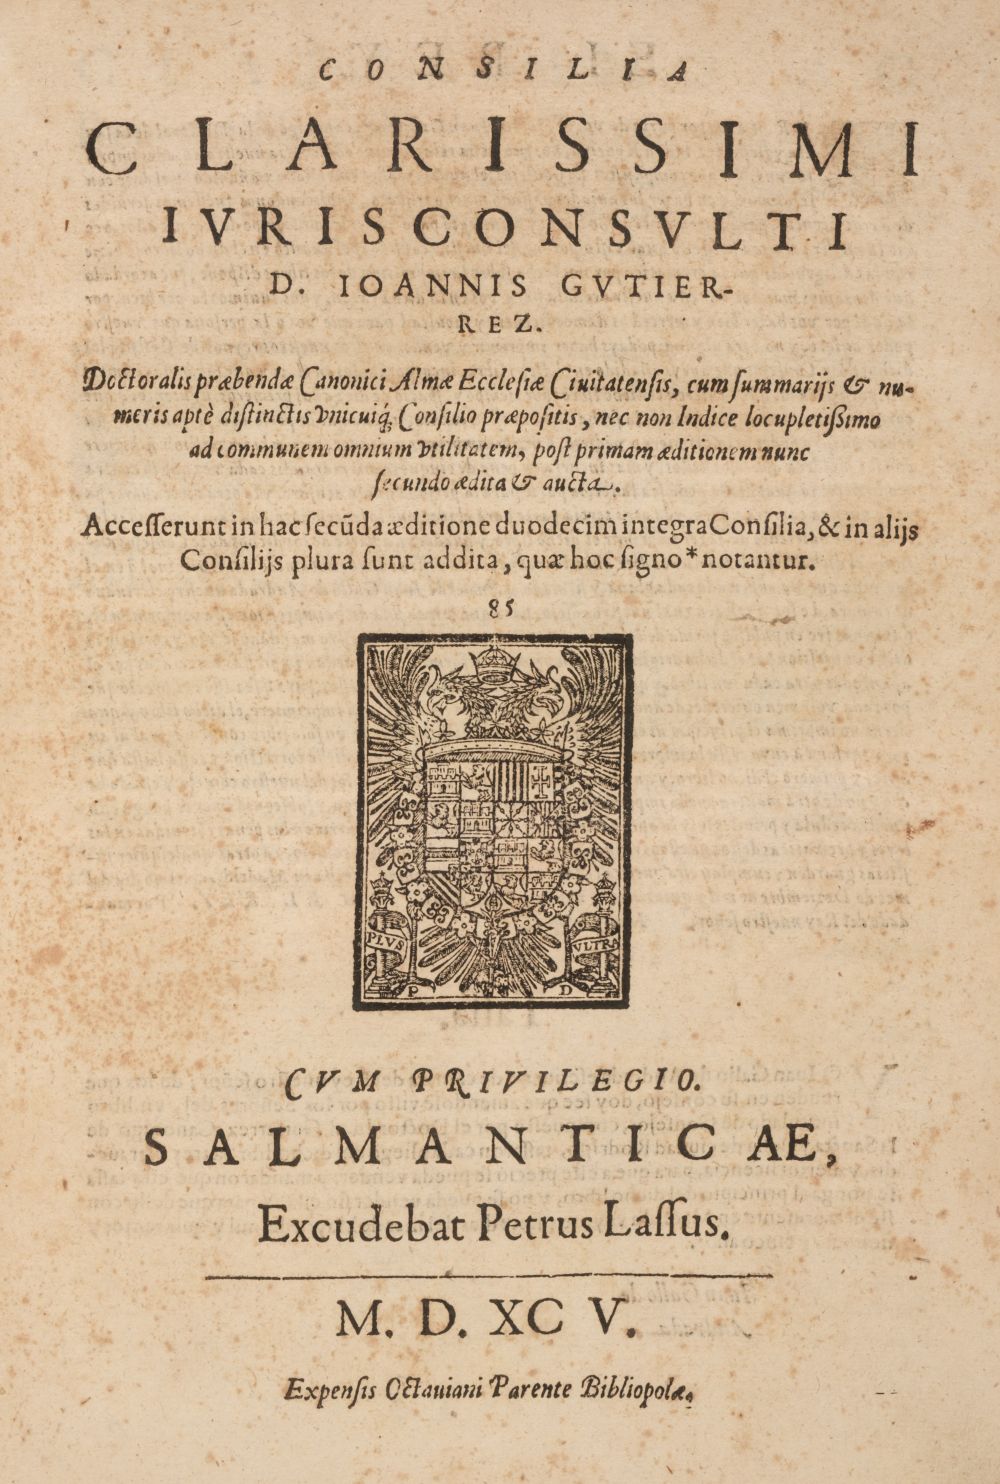 Gutierrez (Juan). Consilia Clarissimi Ivrisconsvulti, Salamanca: 1595,